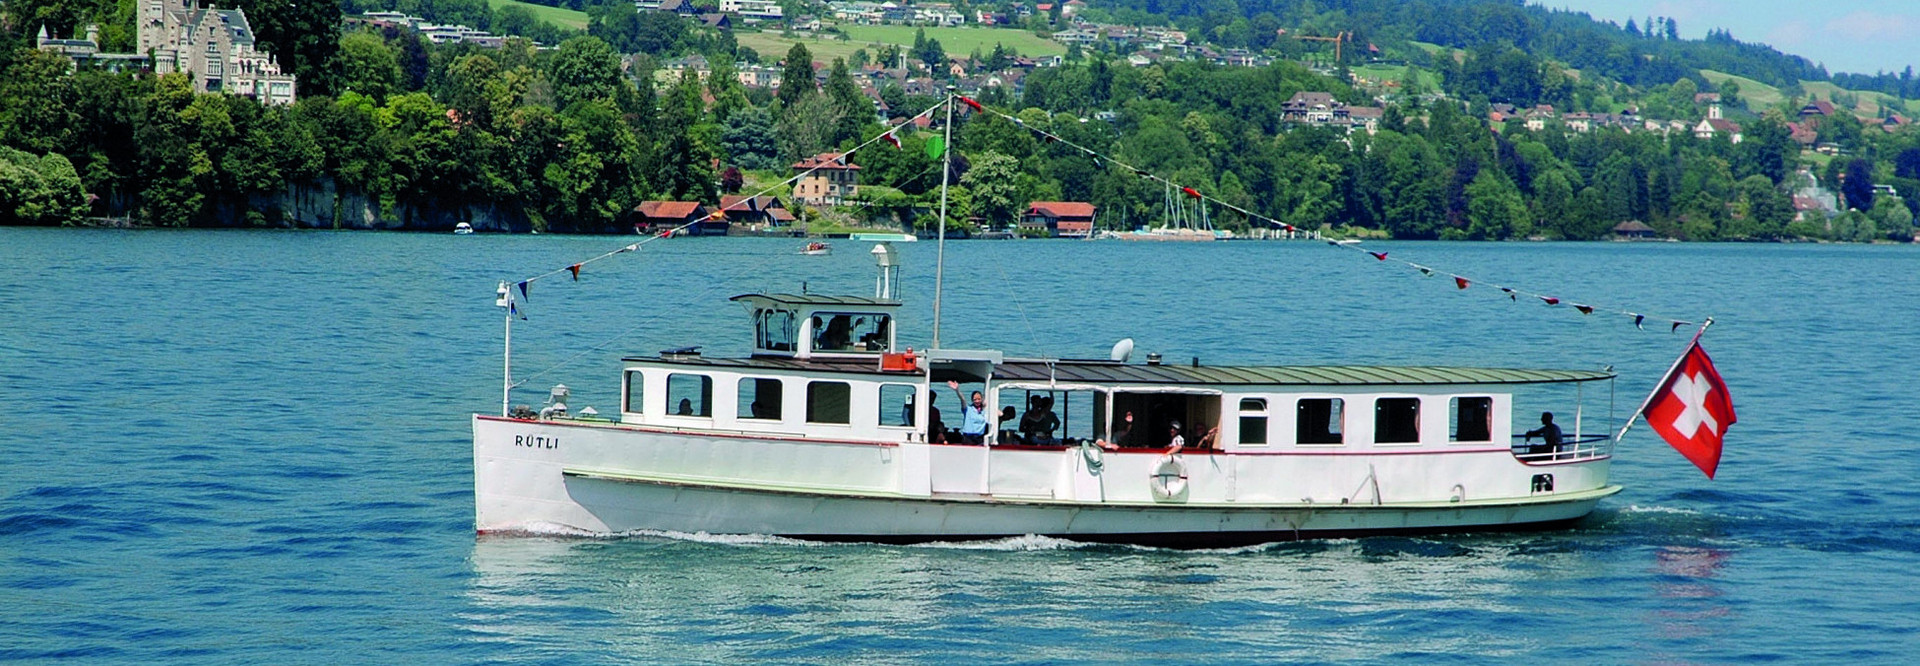 Le bateau à moteur Rütli navigue sur le lac des Quatre-Cantons par beau temps.